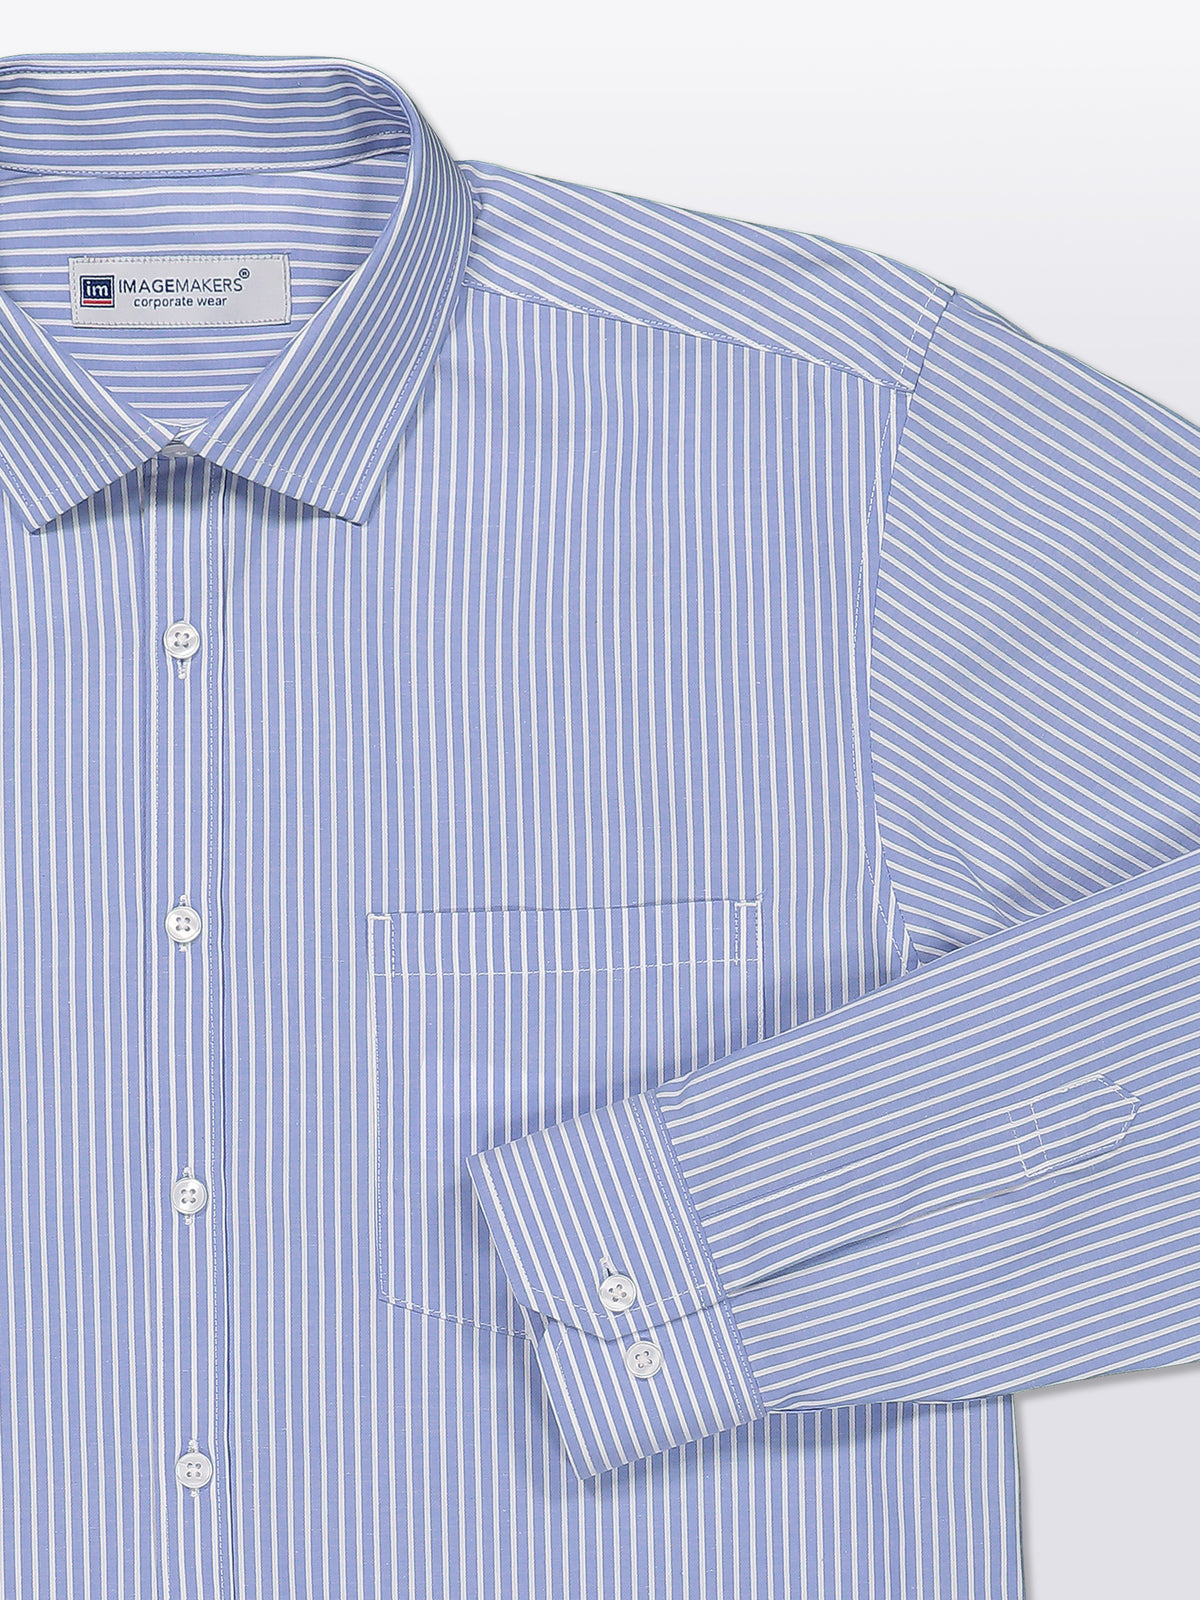 Stuart cotton shirt - blue stripe